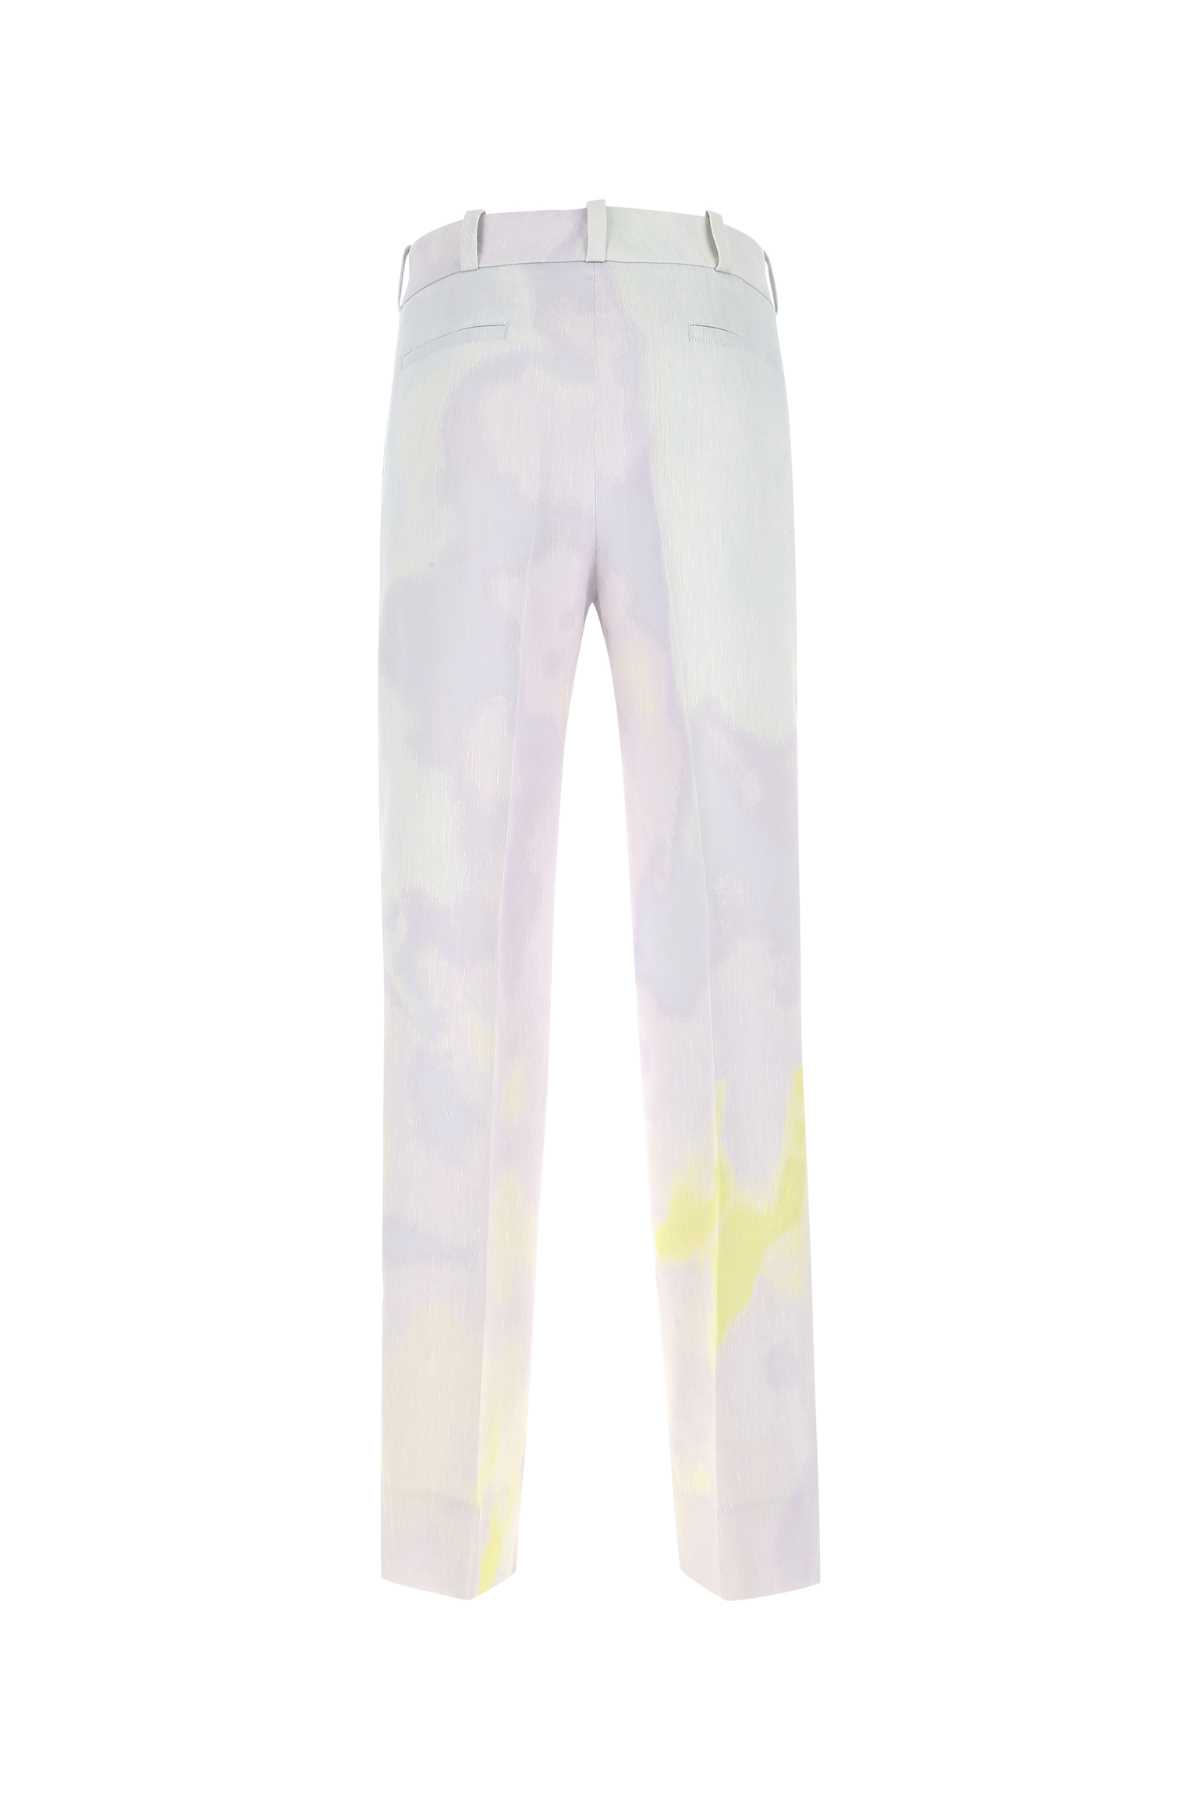 Fendi Printed Linen Blend Trouser In F1d81